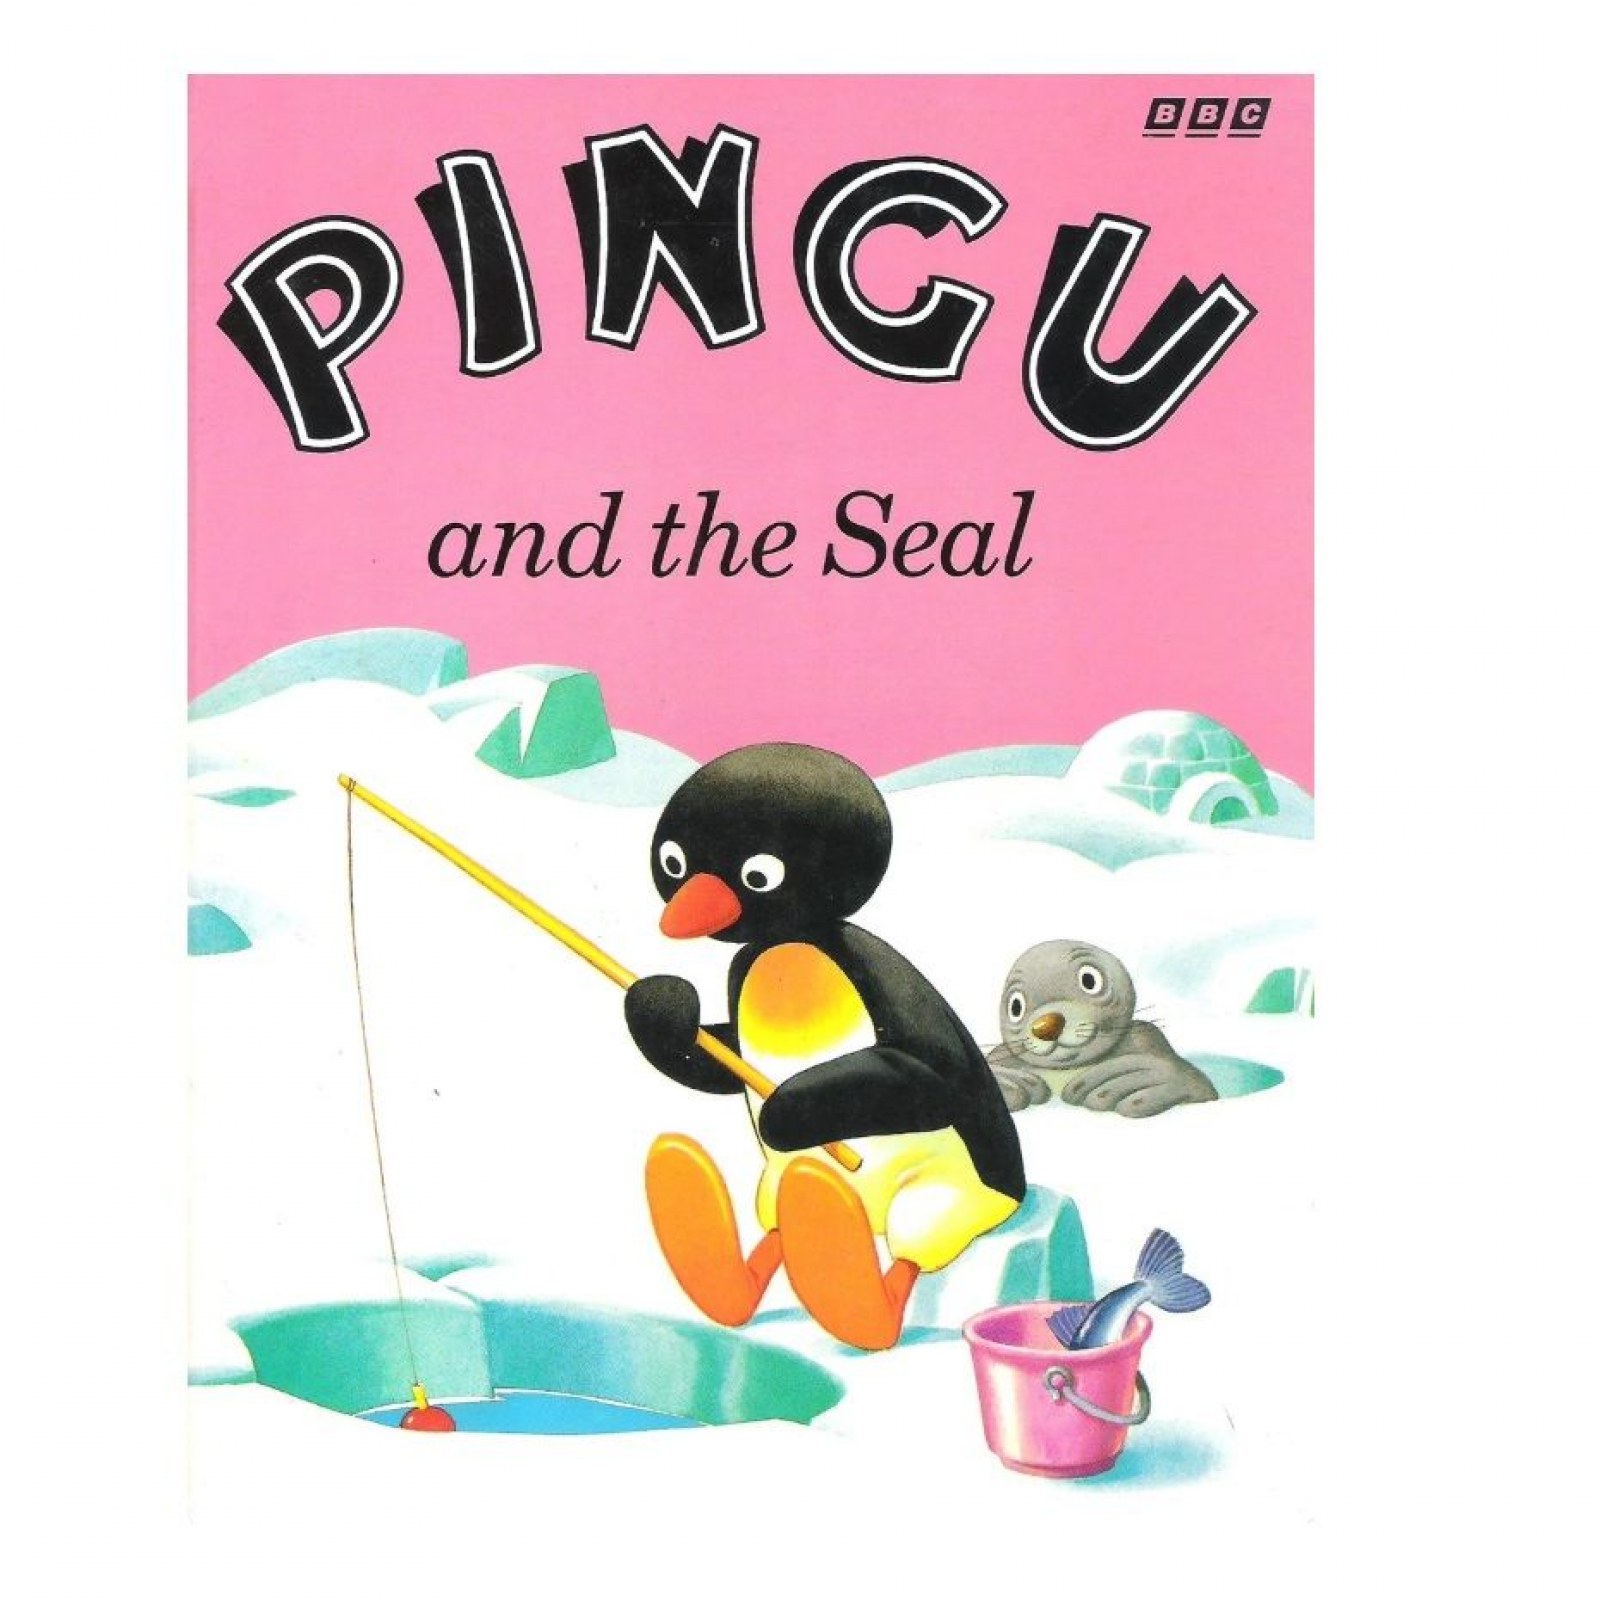 Pingu Illustrator Tony Wolf Dies, Age 88